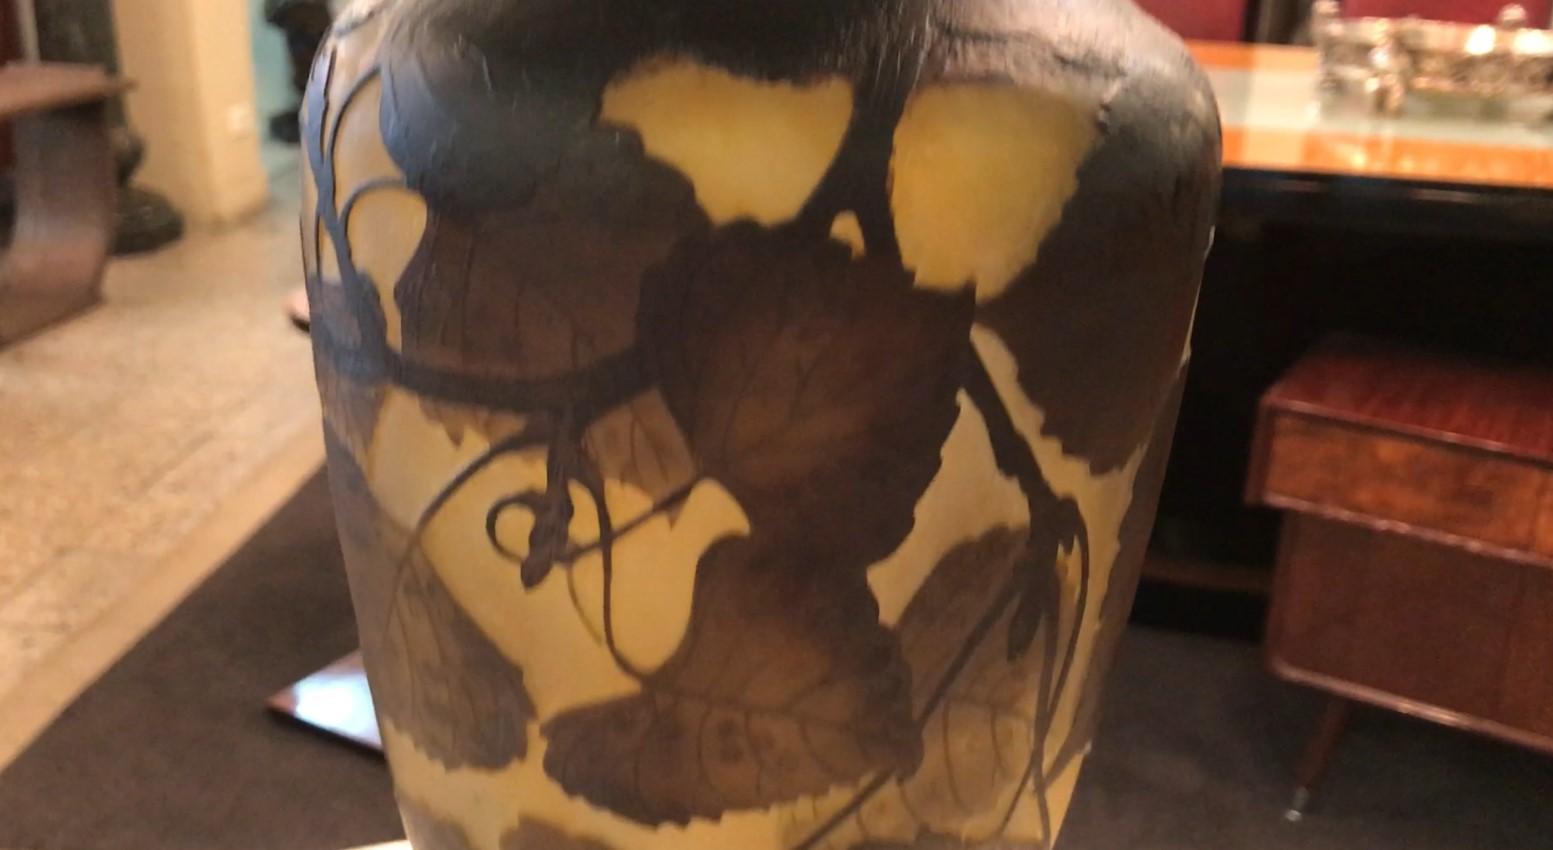 Glass Vase Daum Nancy , France, Style: Jugendstil, Art Nouveau, Liberty, 1910 For Sale